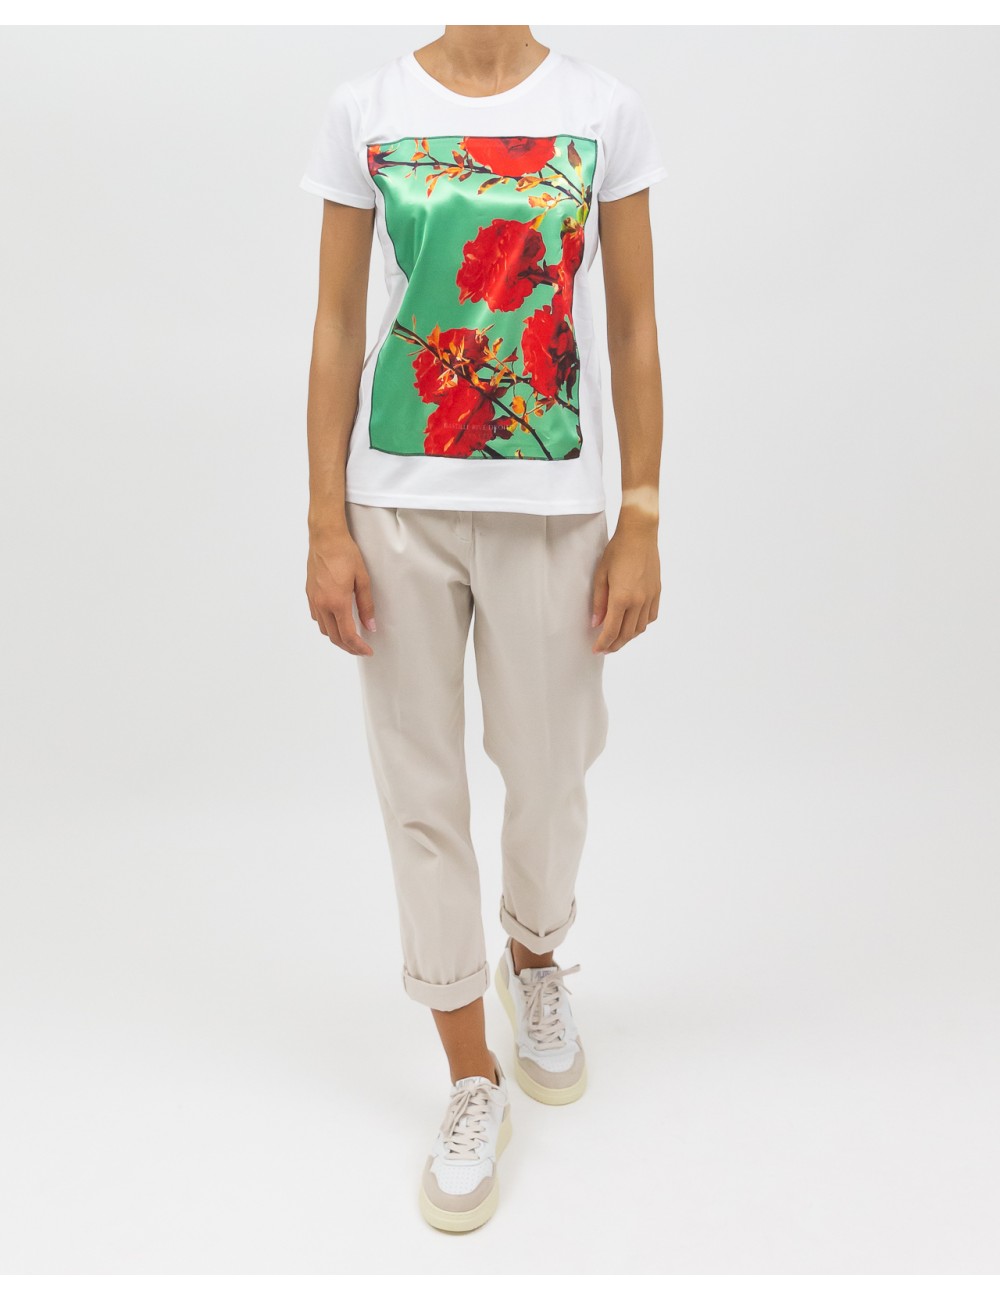 Bastille - Women's ROSES WHITE "Roses" Print T-Shirt